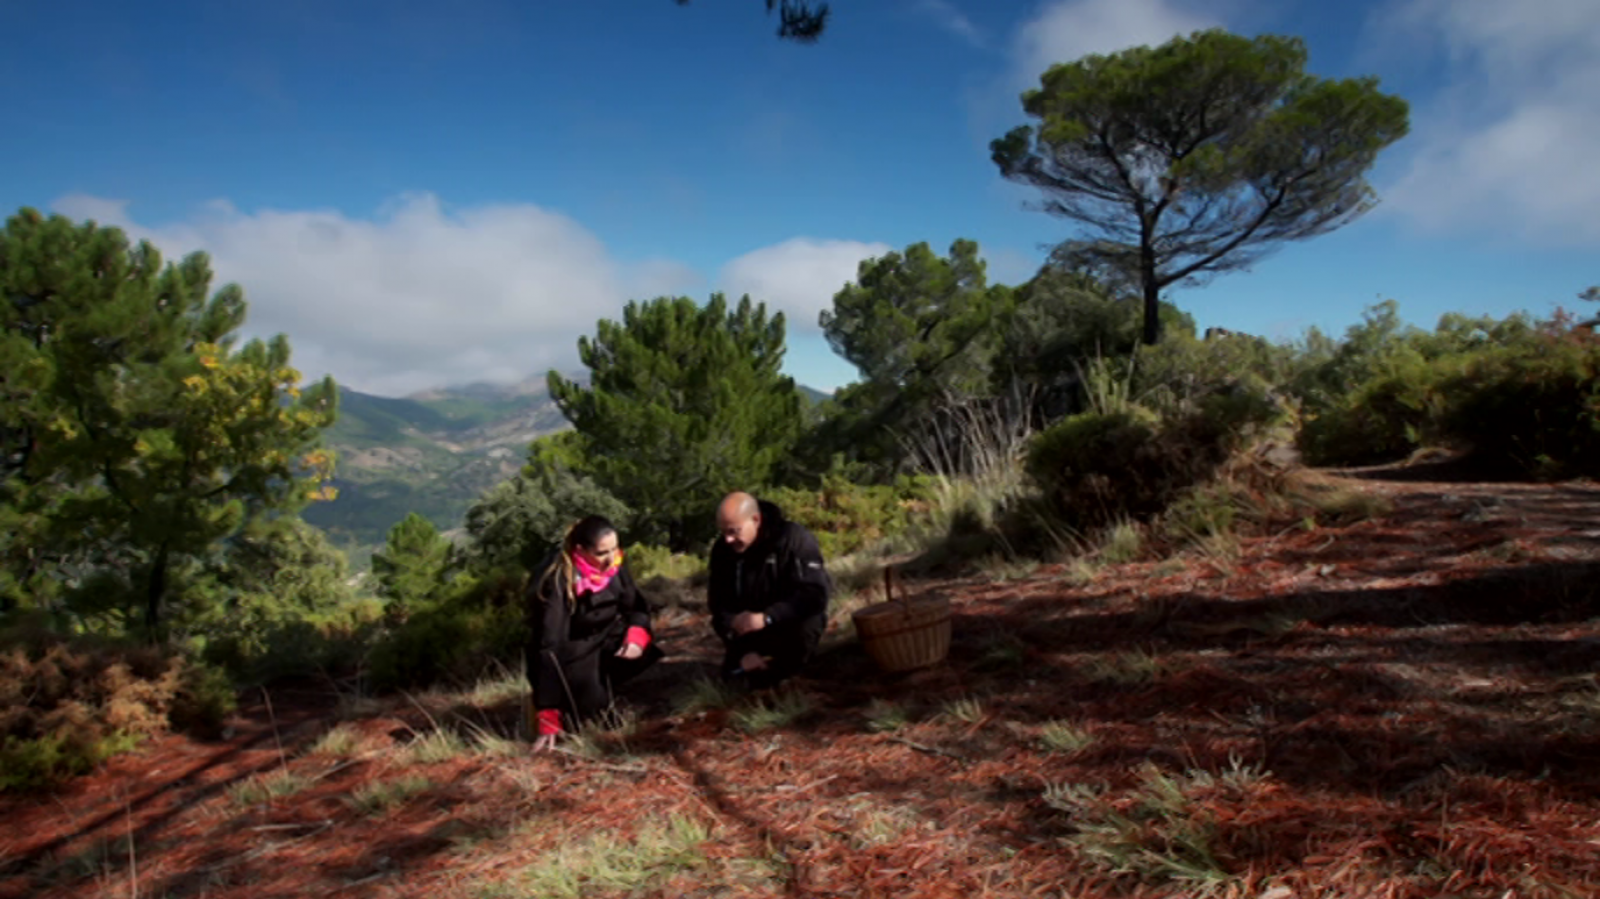 El señor de los bosques - Sierra de Huetor (Granada) - RTVE.es